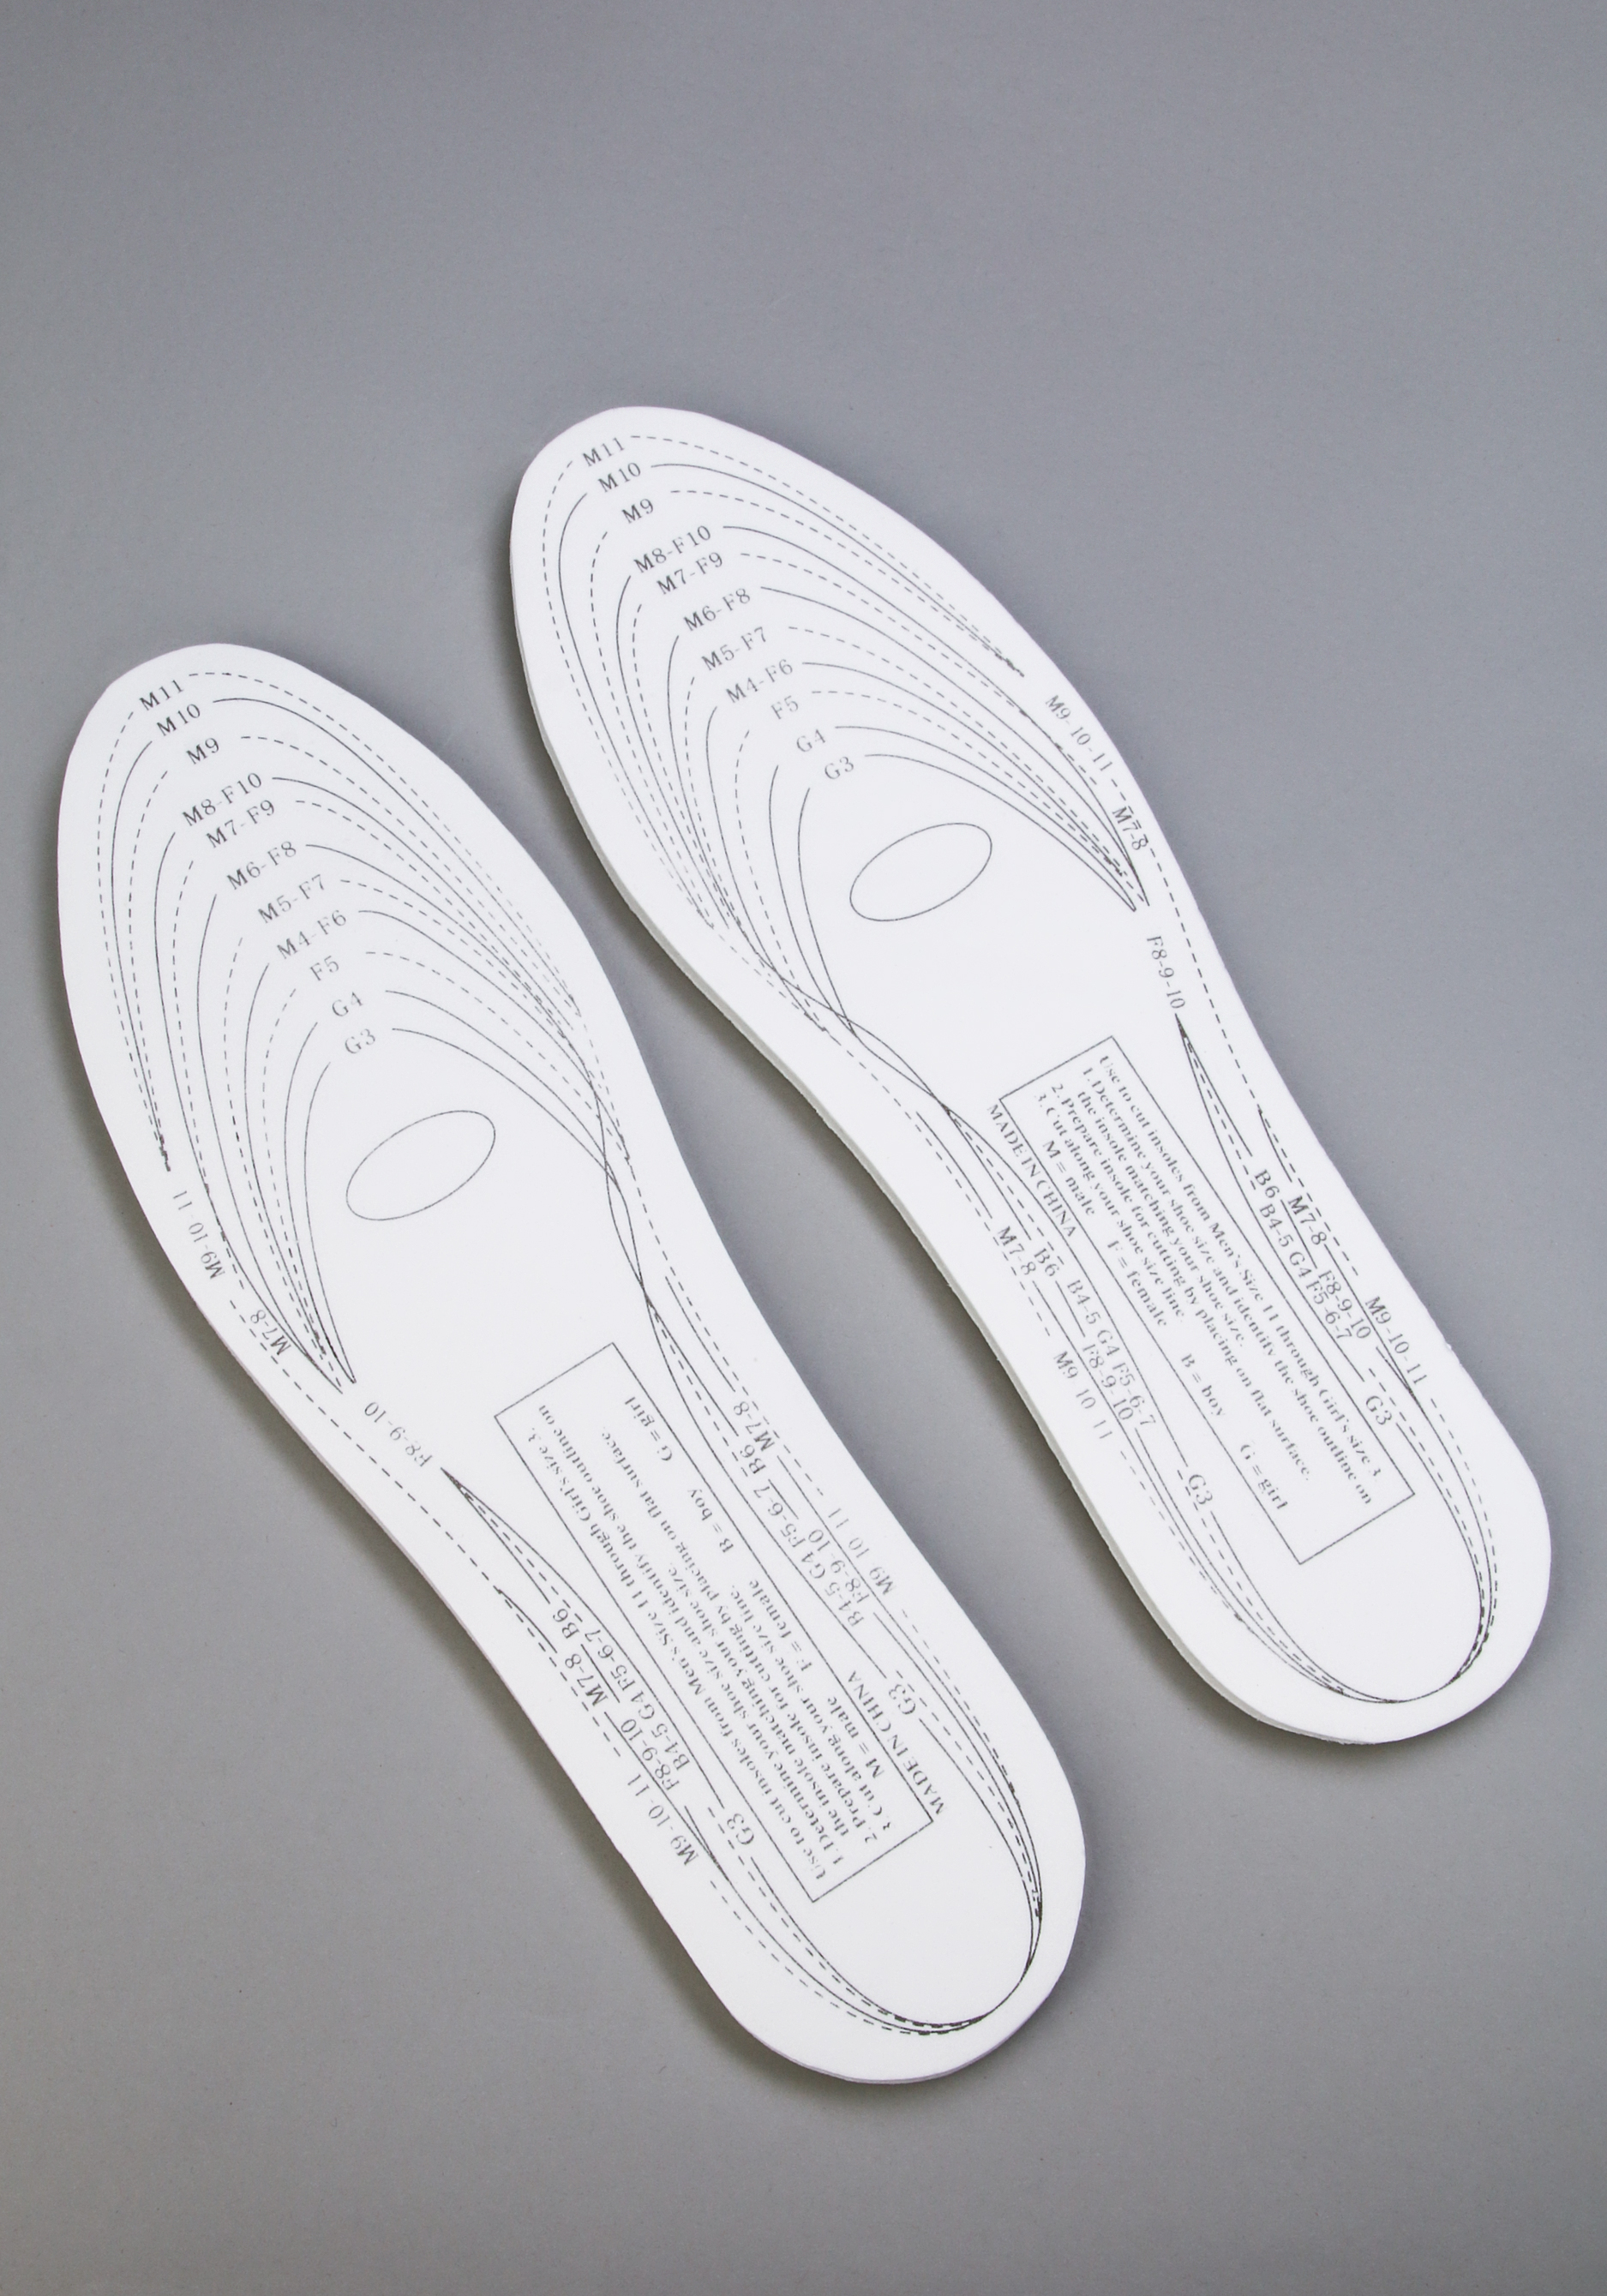 Стельки для обуви с эффектом памяти, 2 пары Bradex, цвет белый, размер универсальный